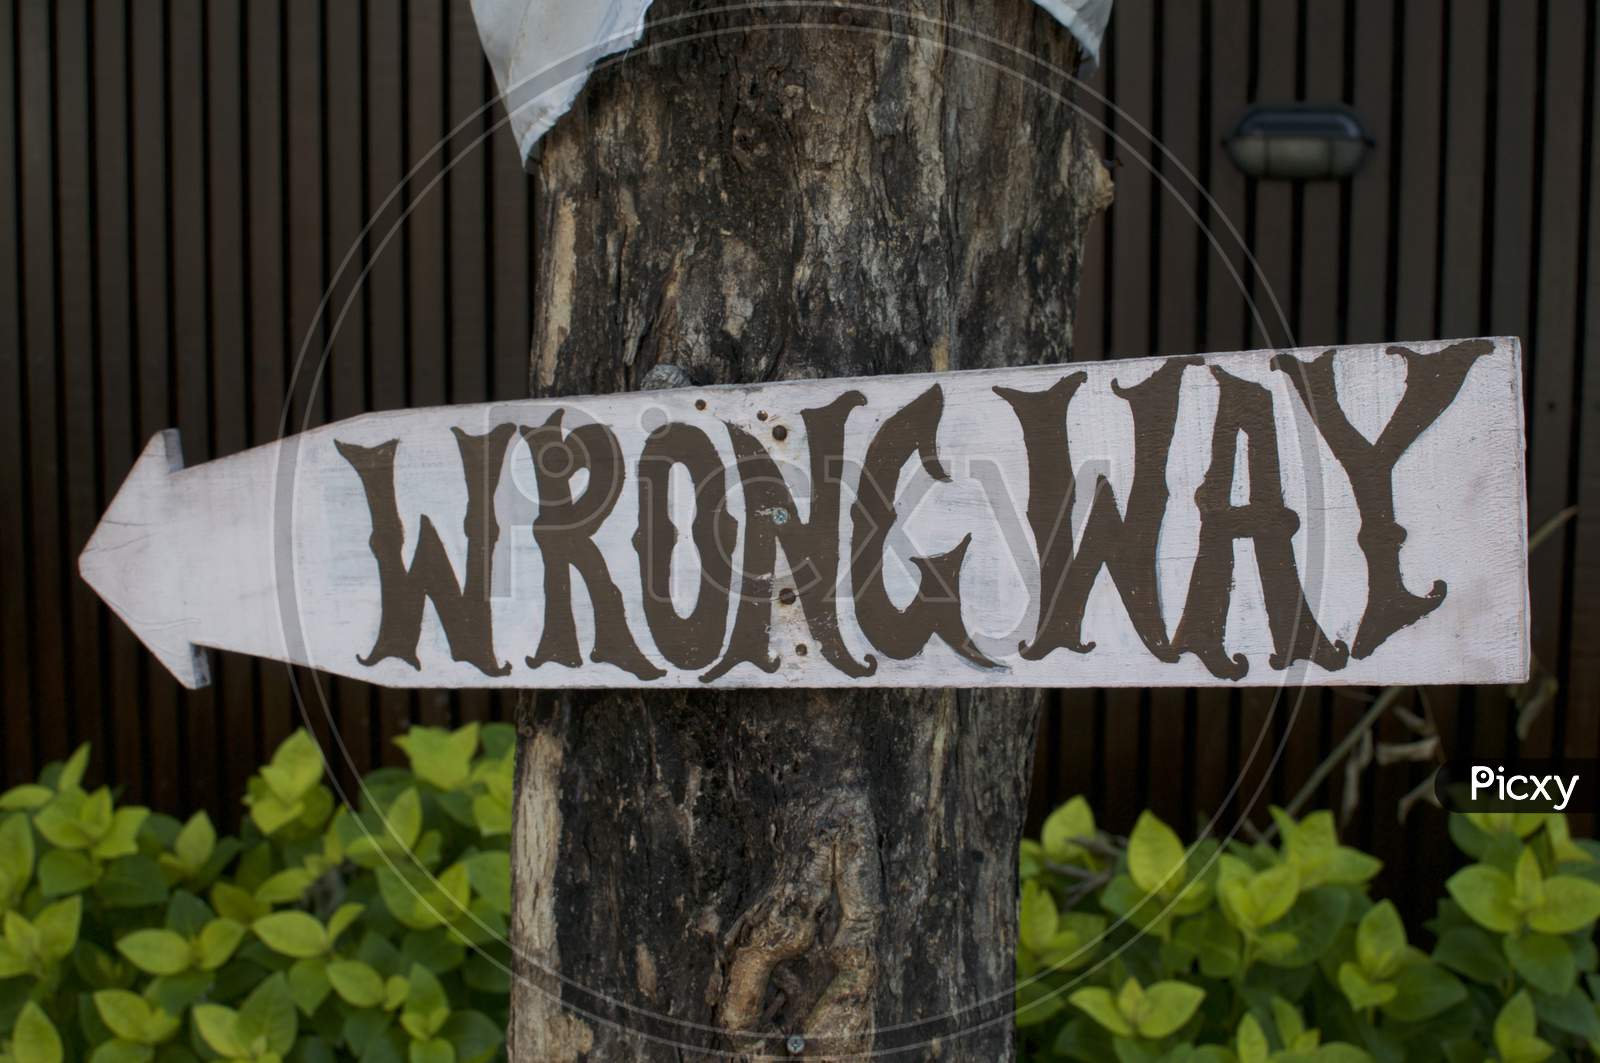 Wrong Way Signage